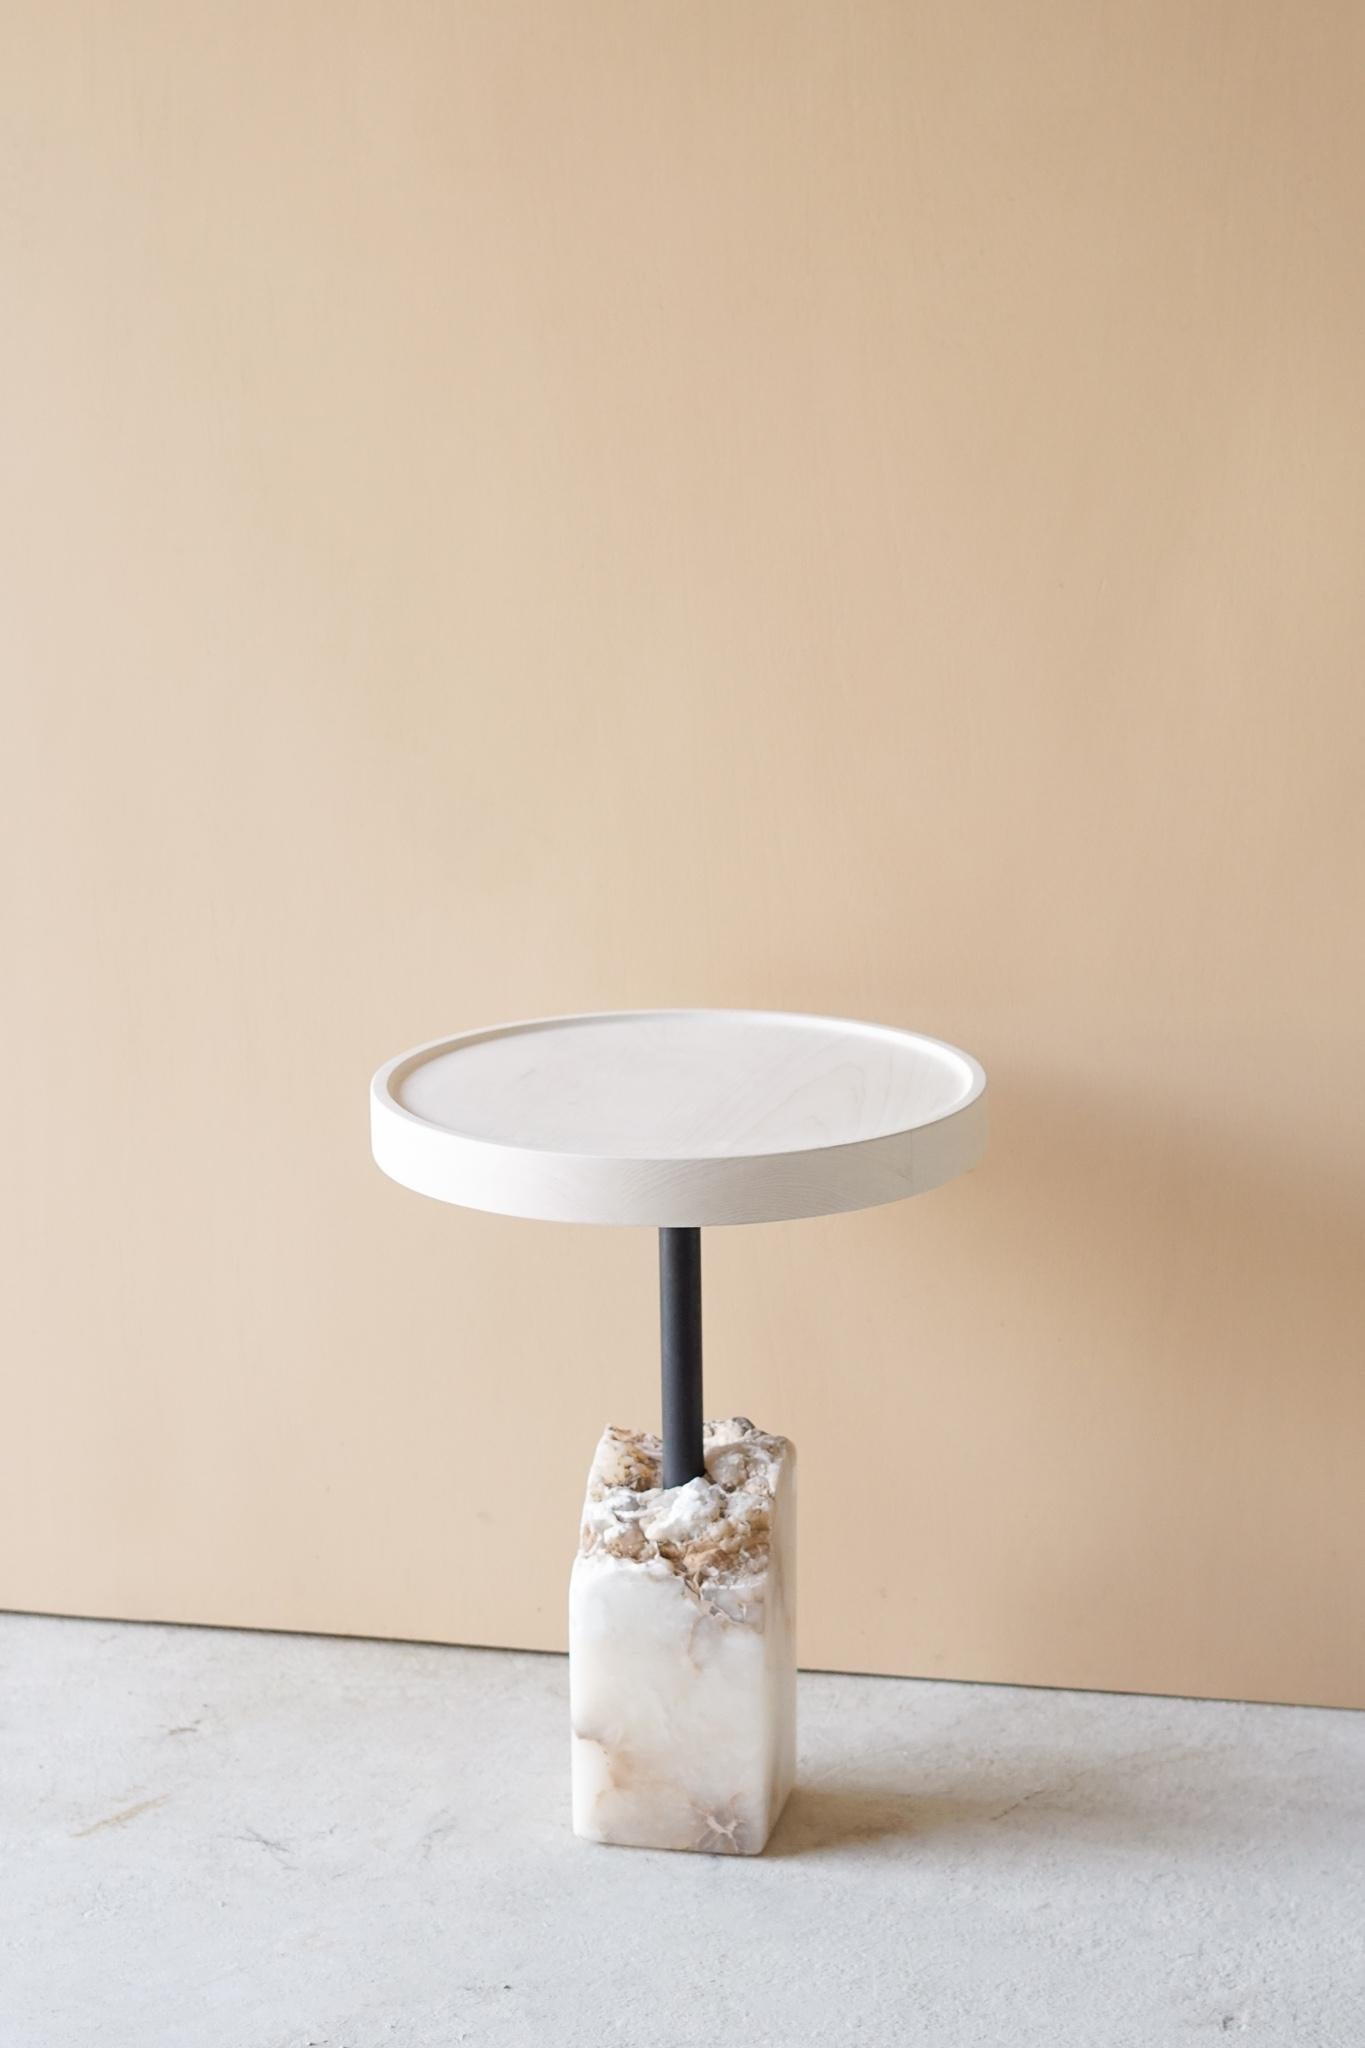 Table d'appoint Bast par Swell Studio
Dimensions : D46 x W46 x H59 cm.
MATERIAL : érable blanchi, albâtre blanc, acier noirci.

Plateau en érable blanchi flottant au-dessus d'un morceau de pierre fragmenté.

Swell Studio se concentre sur la